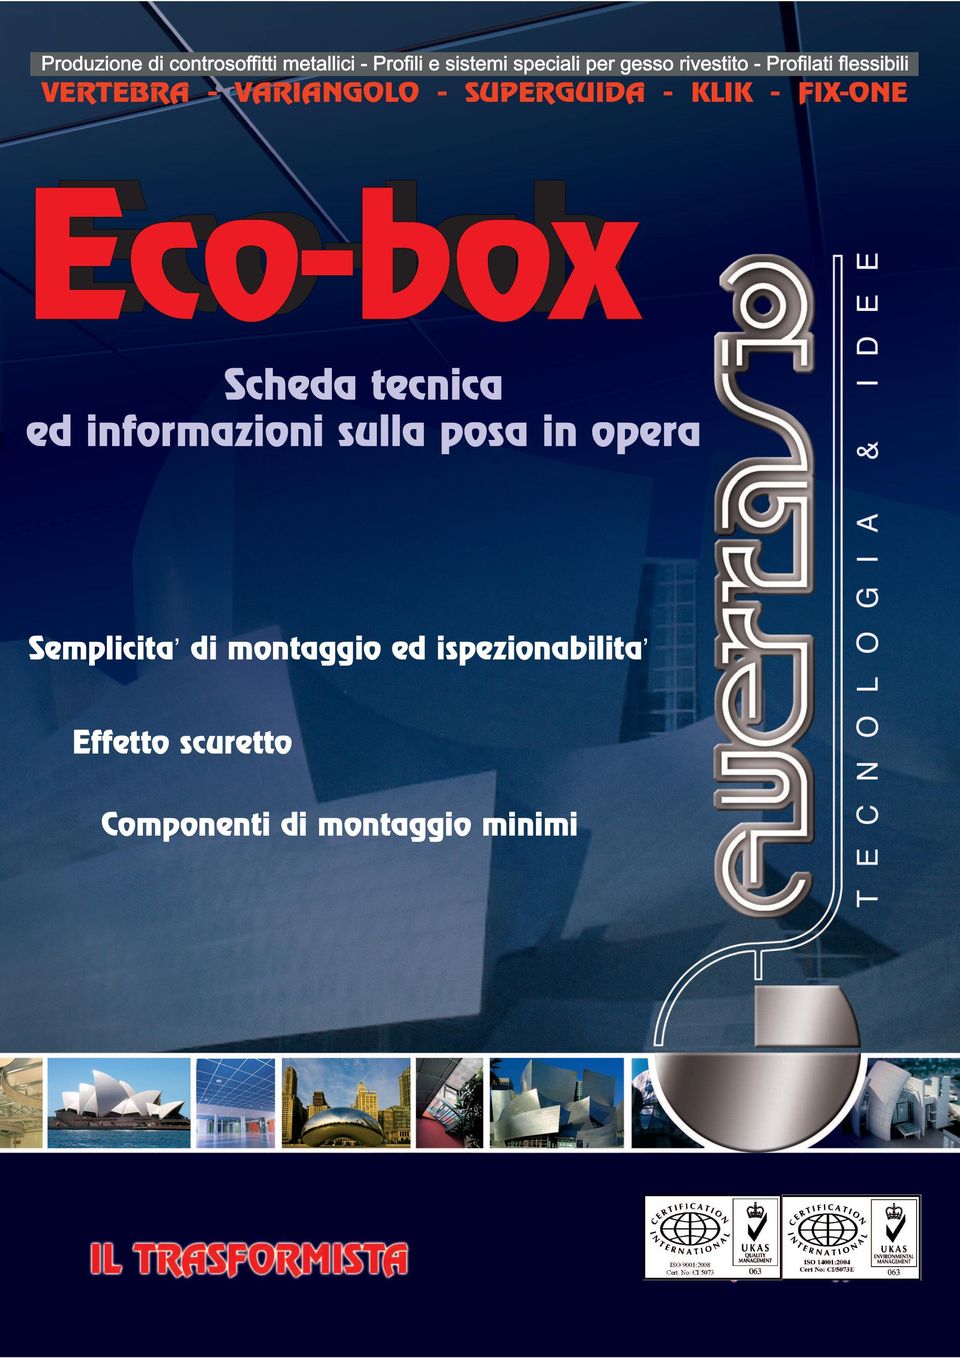 FIX-ONE Eco-lab Eco-box Scheda tecnica ed informazioni sulla posa in opera